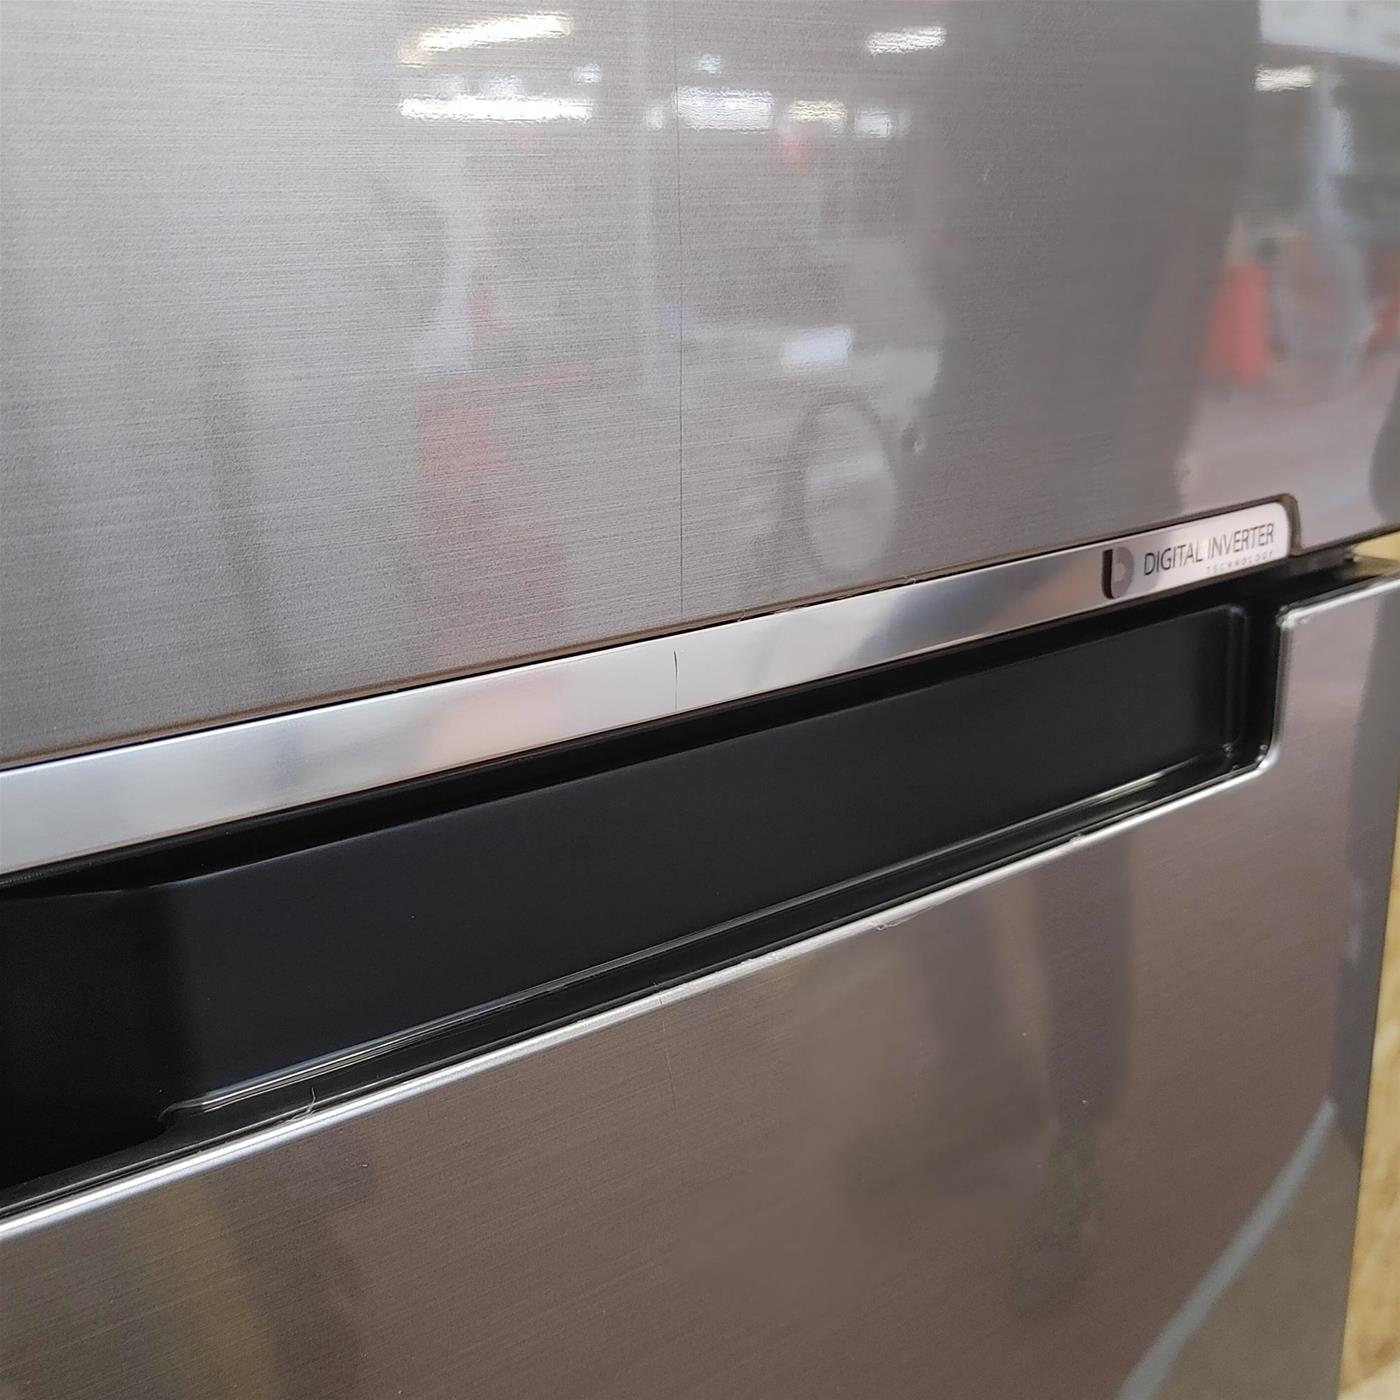 Samsung RT32K5030S8 frigorifero con congelatore Libera installazione 321 L F Acciaio inossidabile, Total No frost